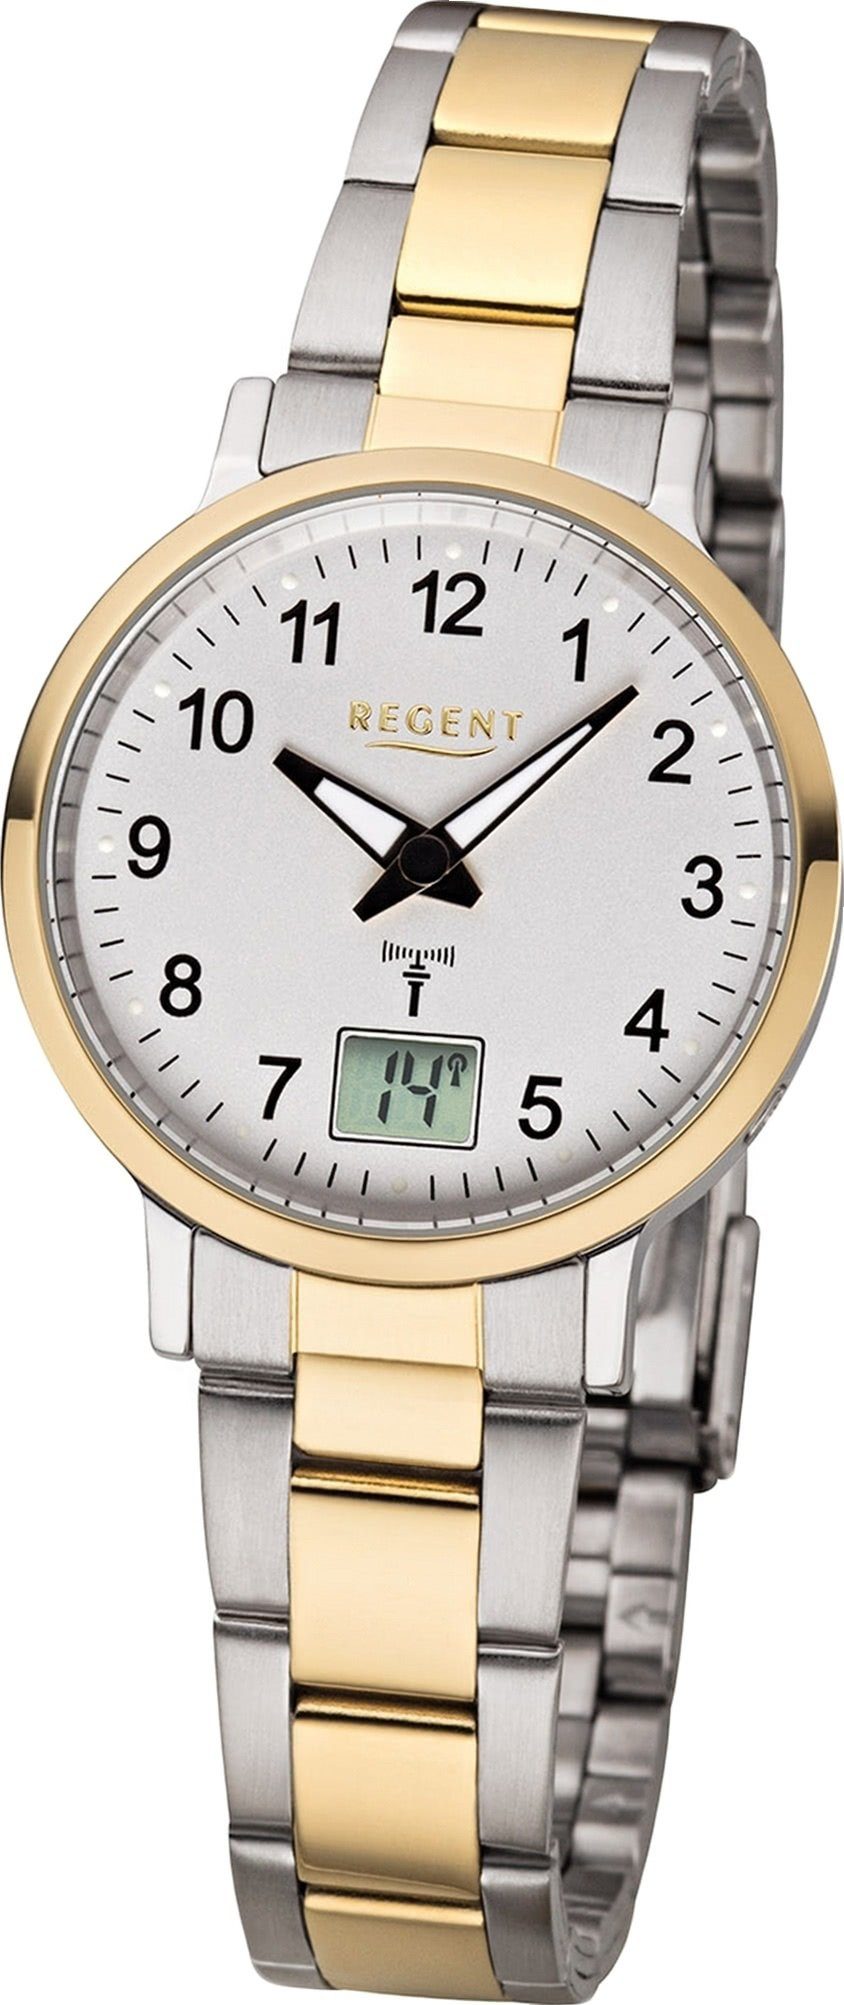 Gehäuse rundes Metall Damen Regent Elegant-Style Uhr (ca. FR-258, 30mm), Metallarmband, mit Regent Damenuhr Funkuhr